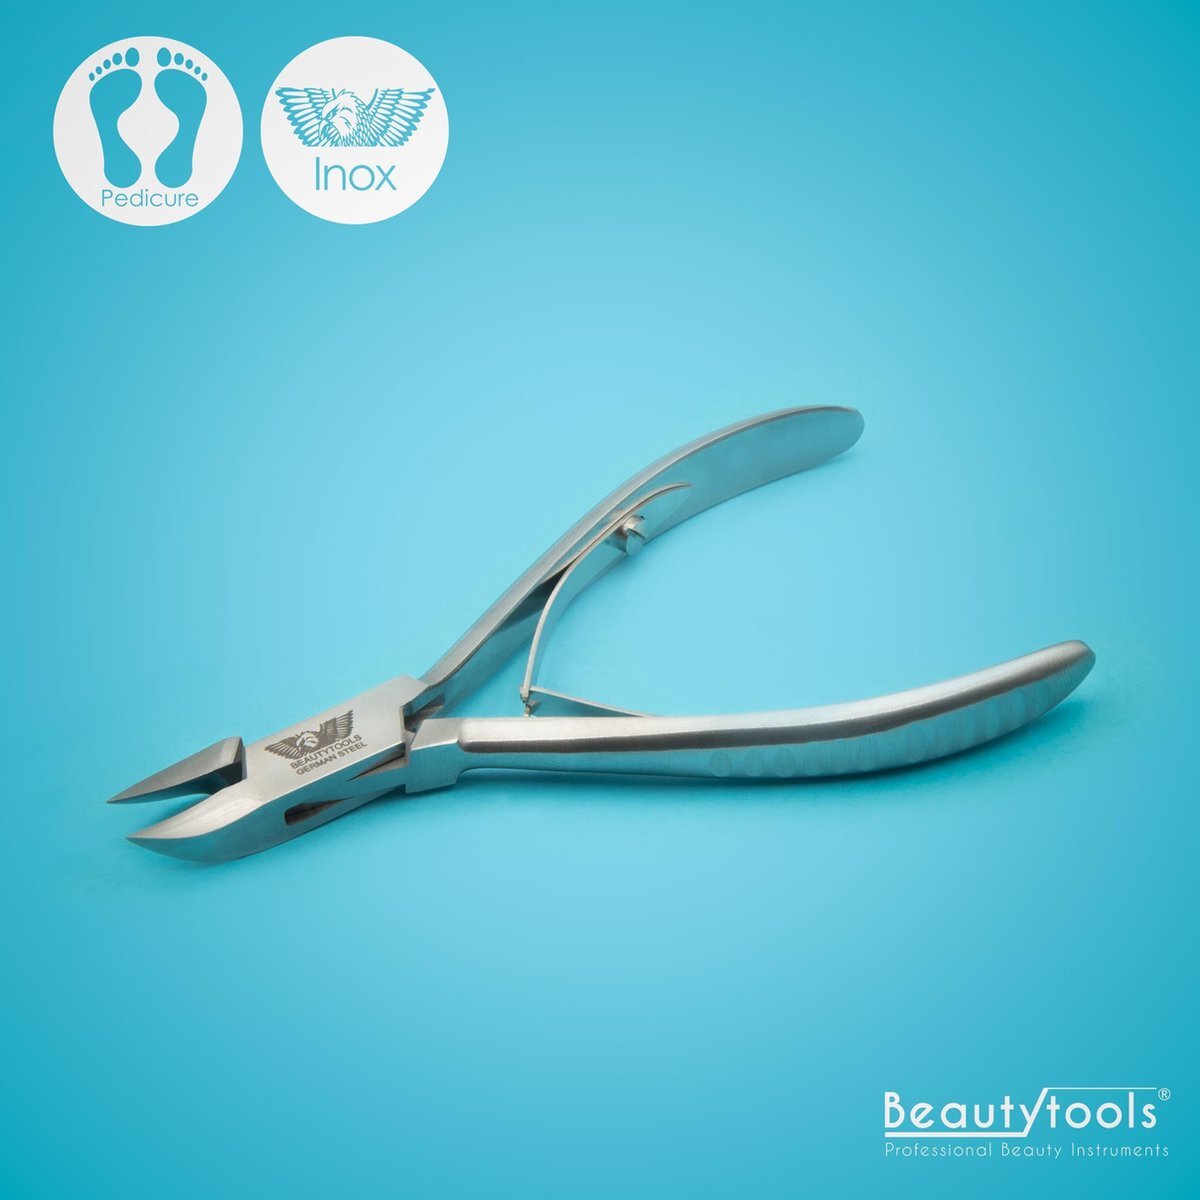 Beautytools.be BeautyTools INOX Nagelknipper/Nageltang Voor Manicure/Pedicure Met Spitse Punt Voor Nagelhoekjes – Voor Vinger- en Teennagels - 14 mm Gebogen Bek (NN-2588)